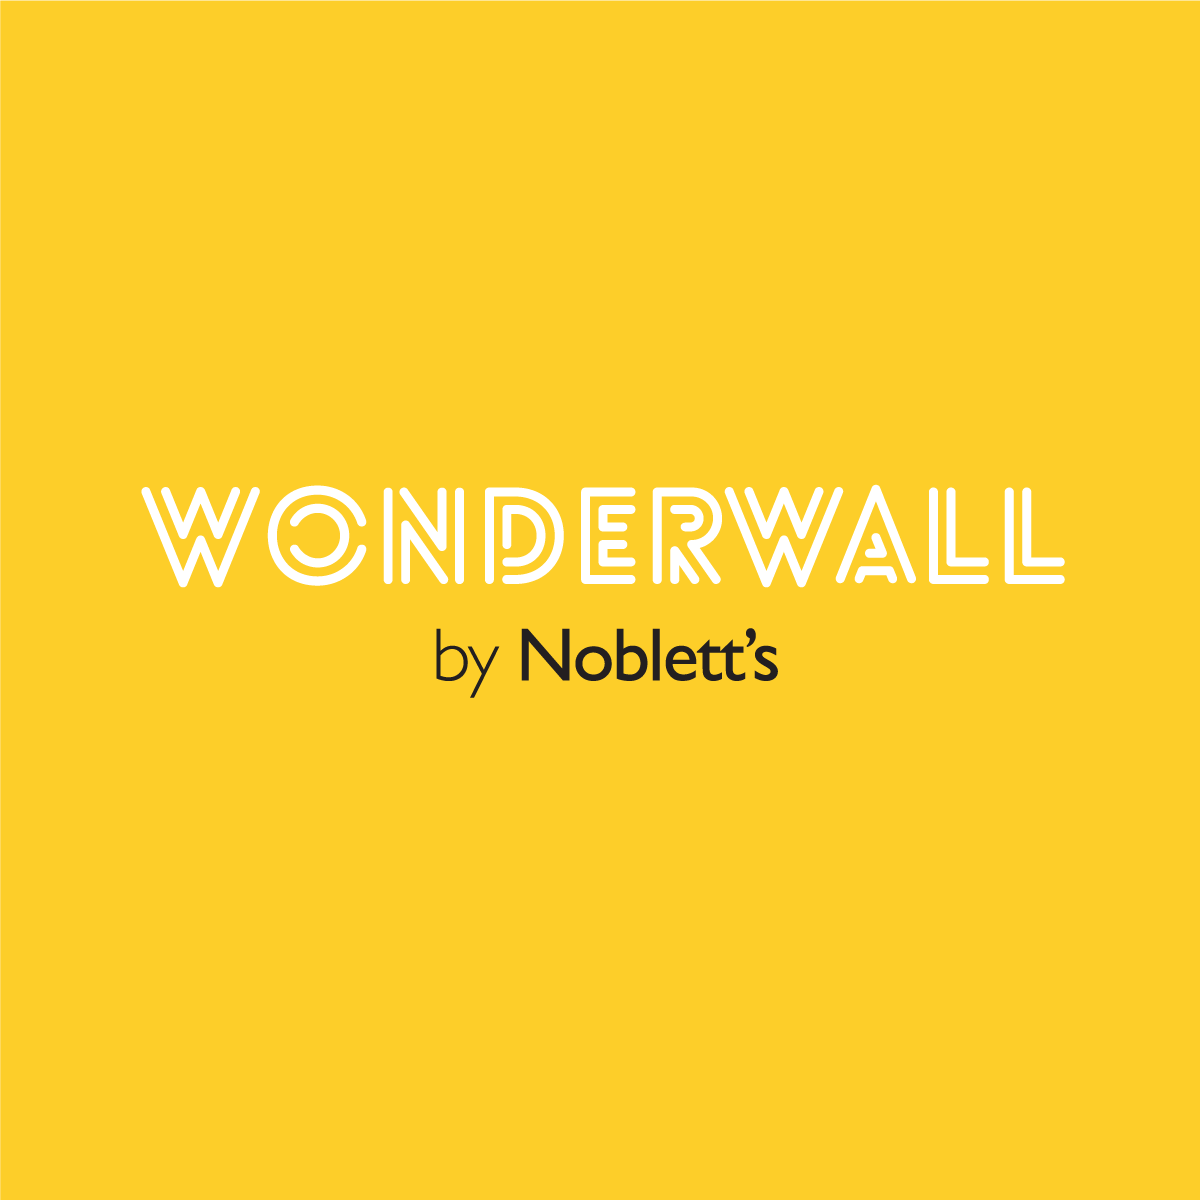 Luxe Grey | WonderWall by Nobletts | #Variant SKU# | Malini